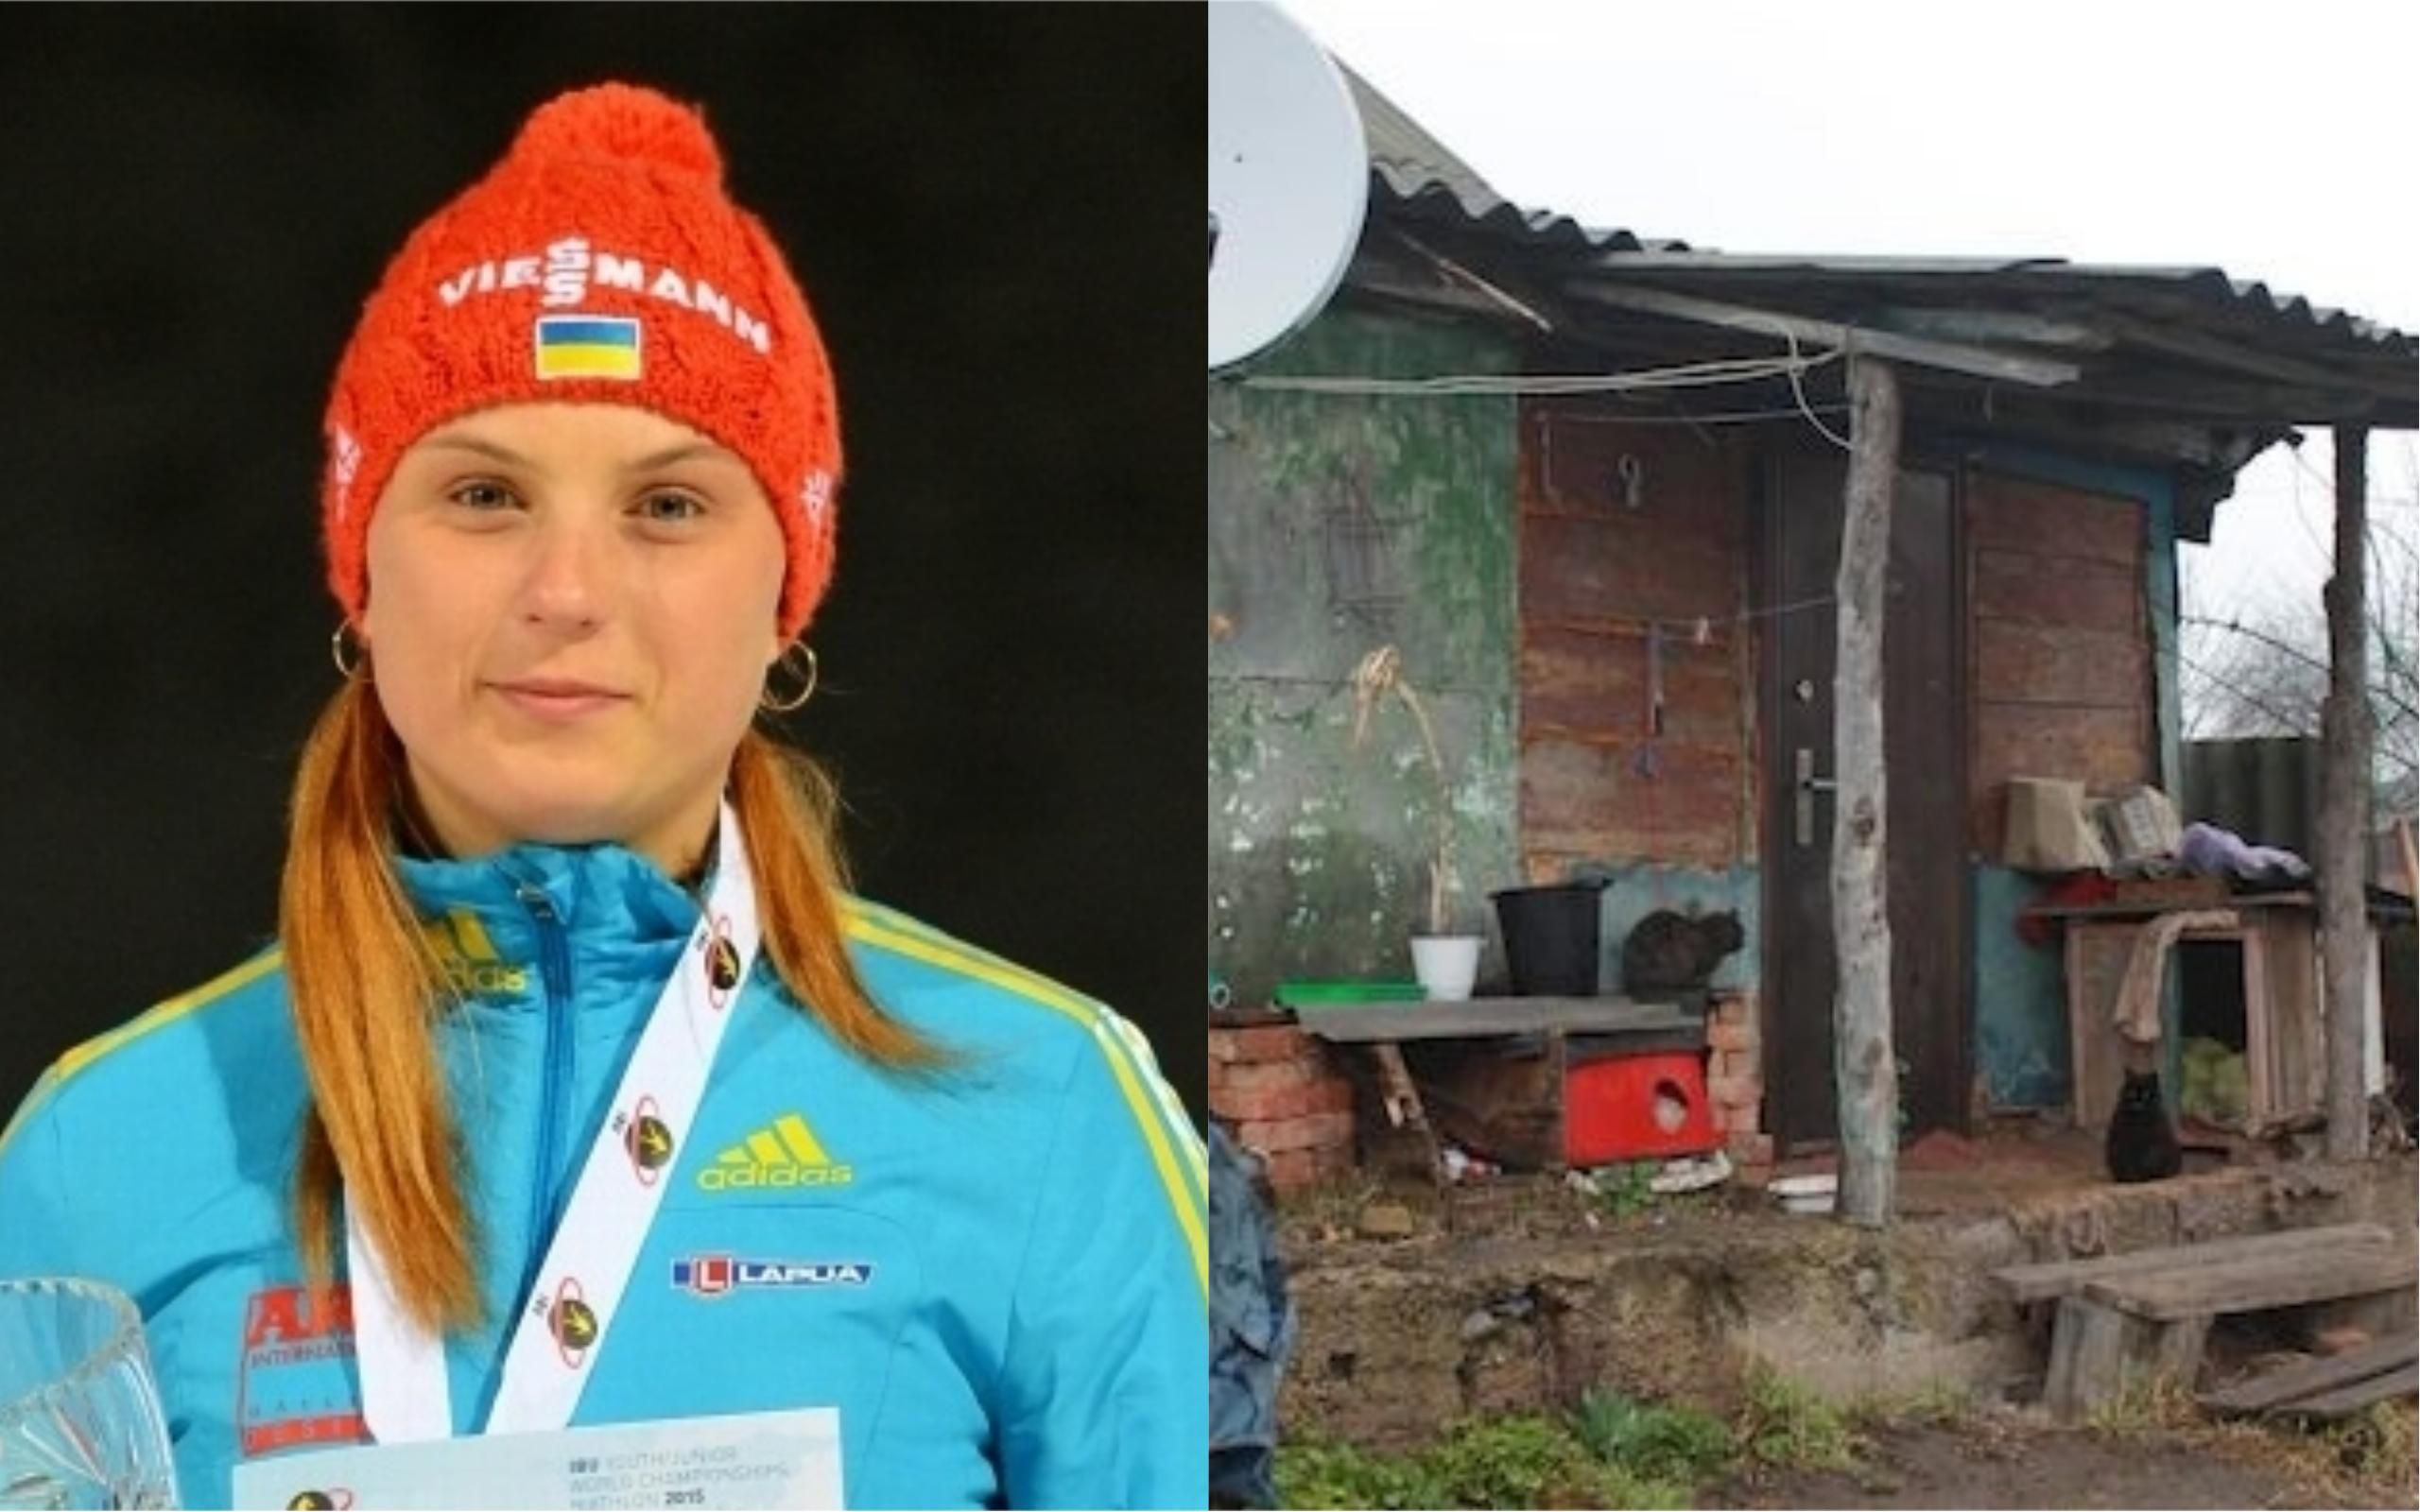 Скандал довкола житла української чемпіонки світу з біатлону: з’явилася реакція Міністерства спорту